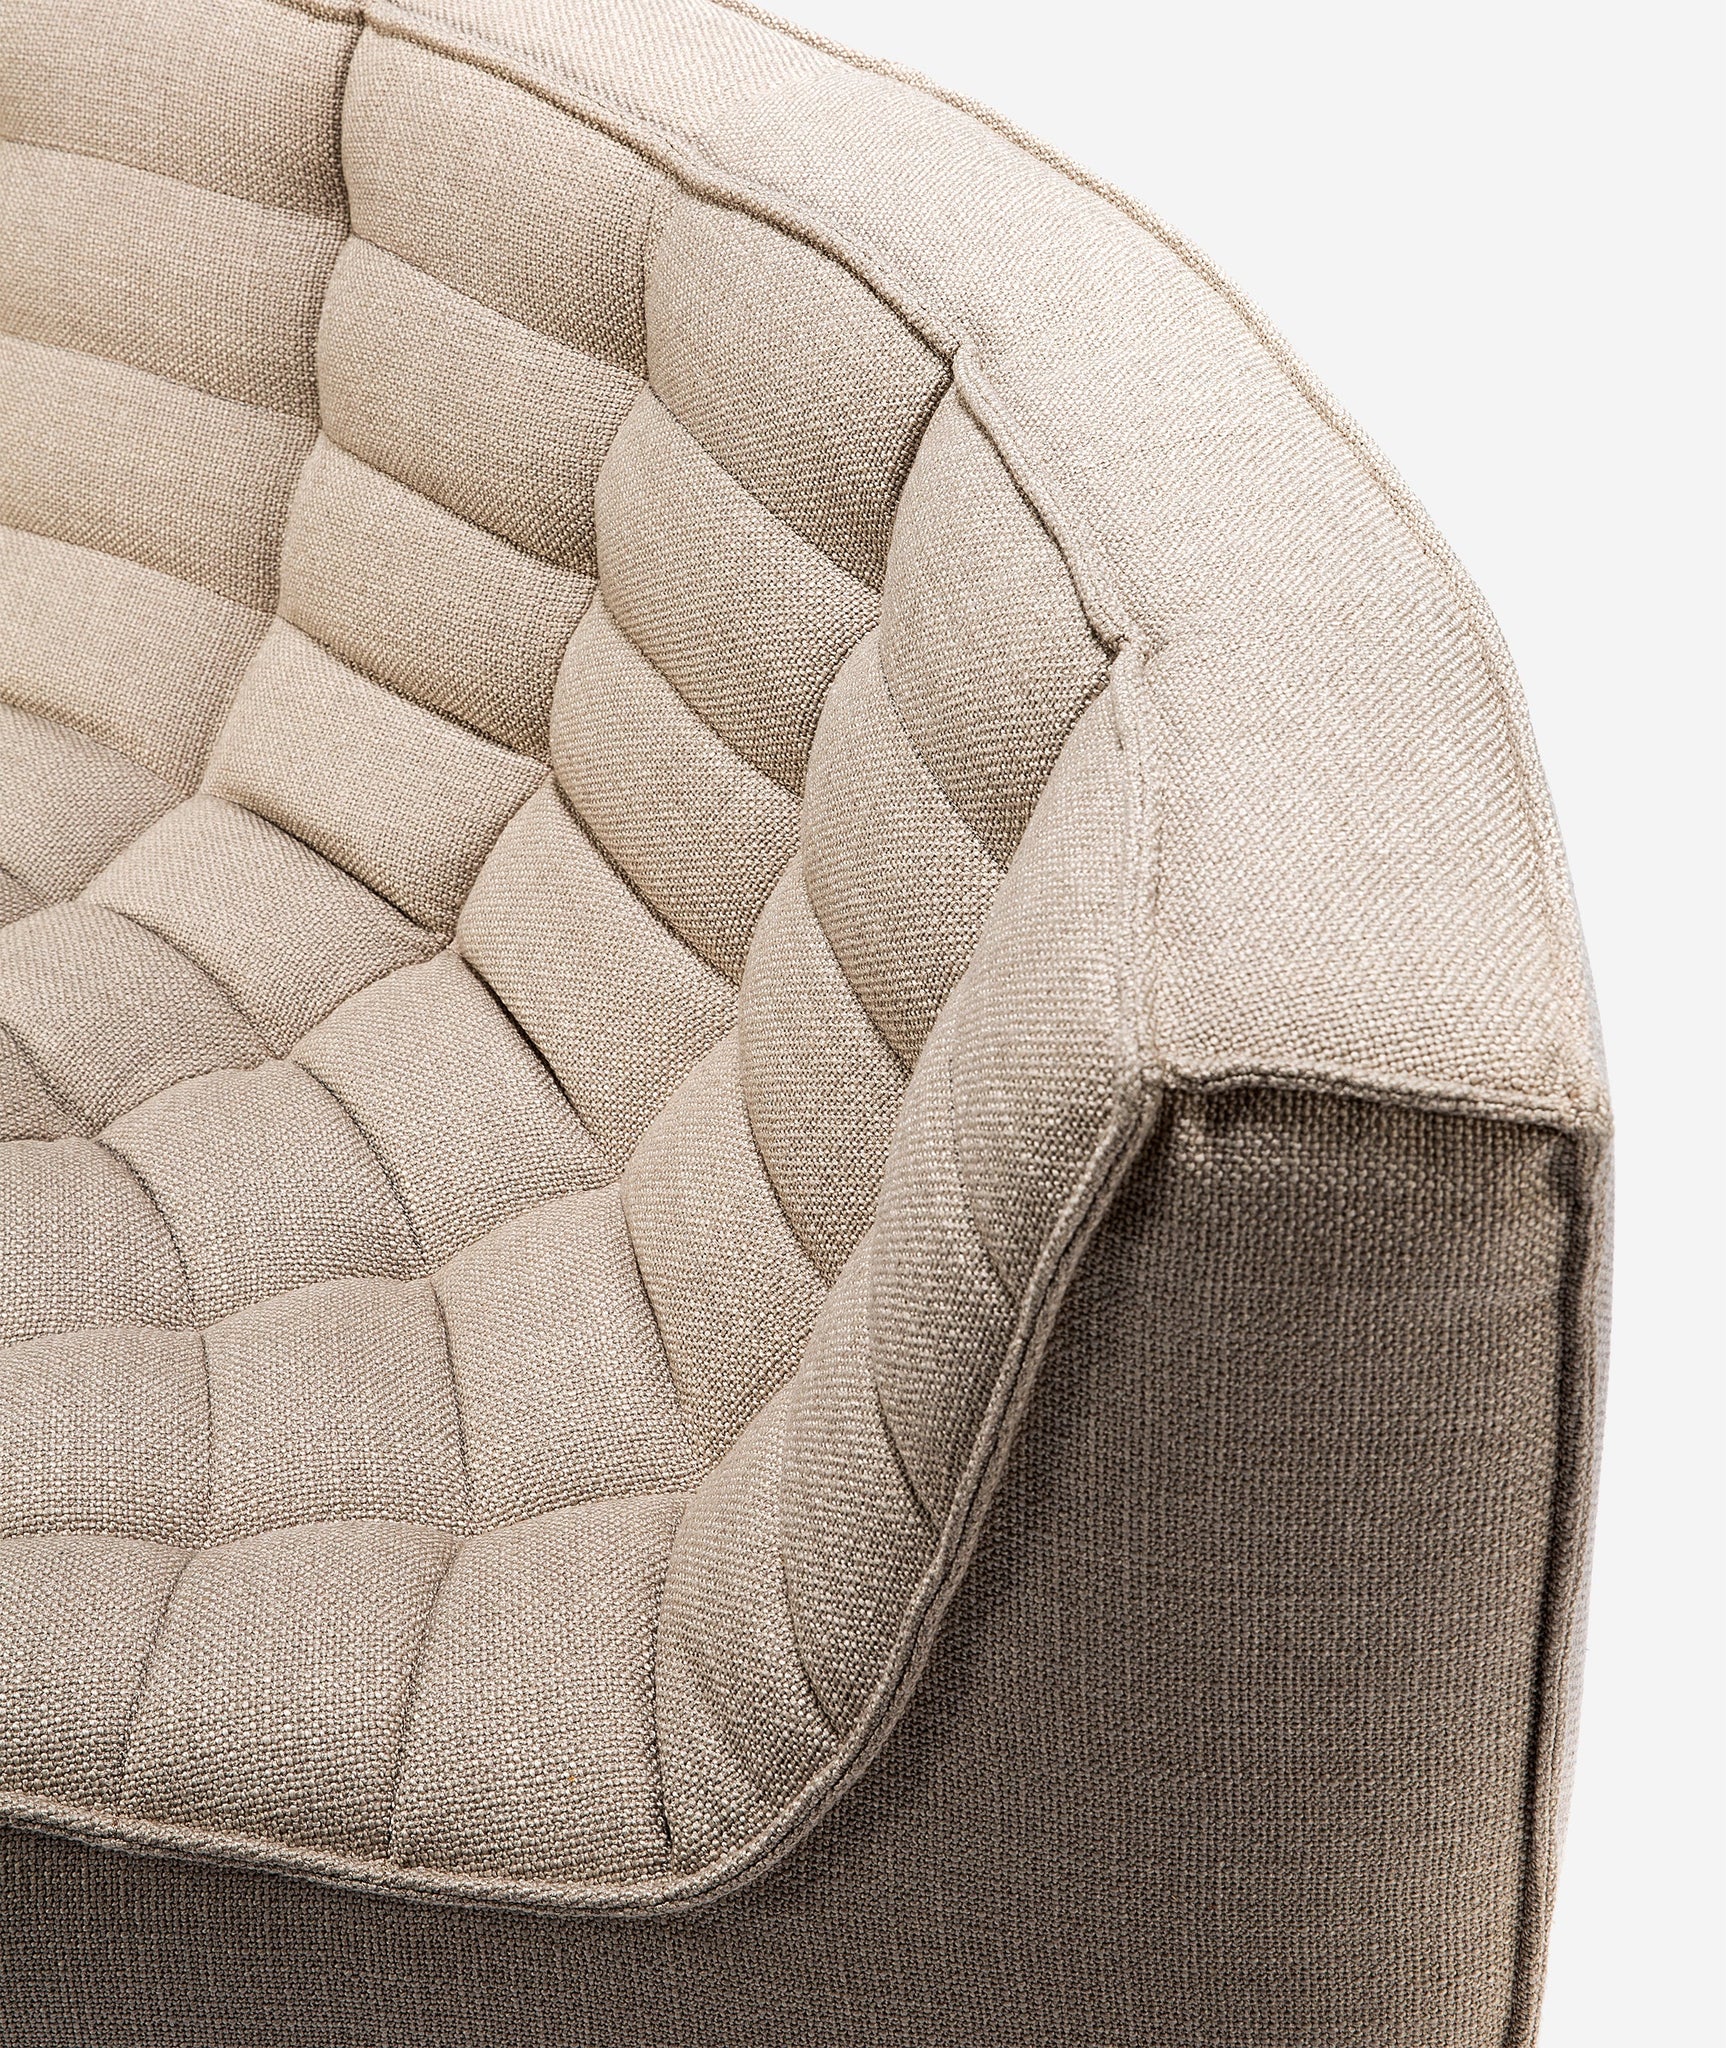 N701 Modular Round Corner Sofa - 4 Colors Ethnicraft - BEAM // Design Store